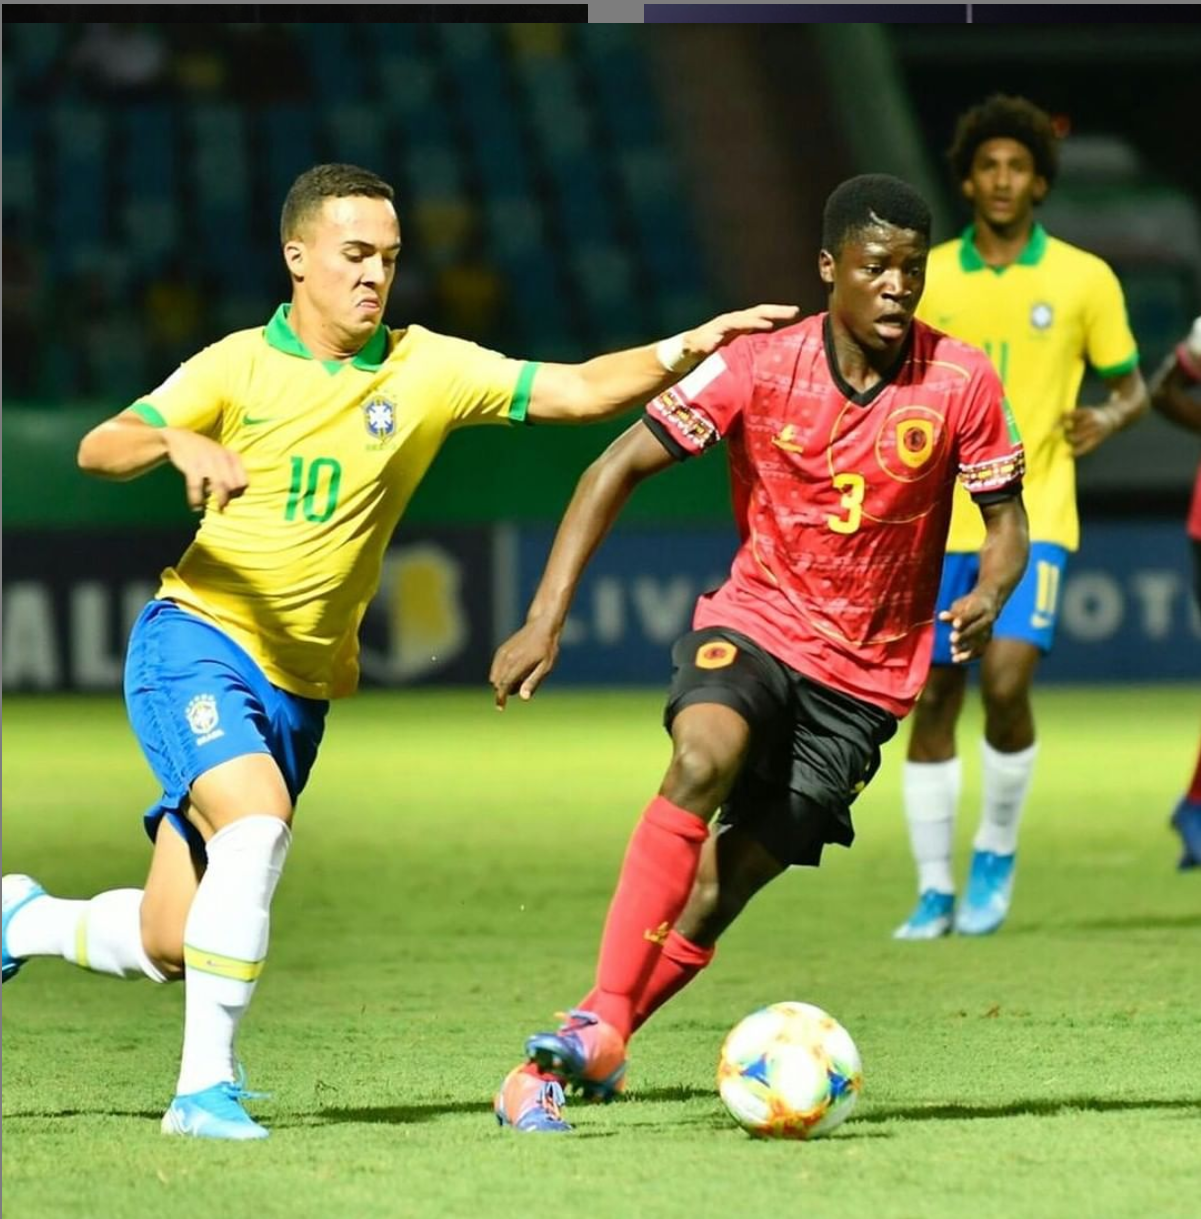 Seleção angolana na Copa do Mundo de futebol - Academia de Futebol de Angola